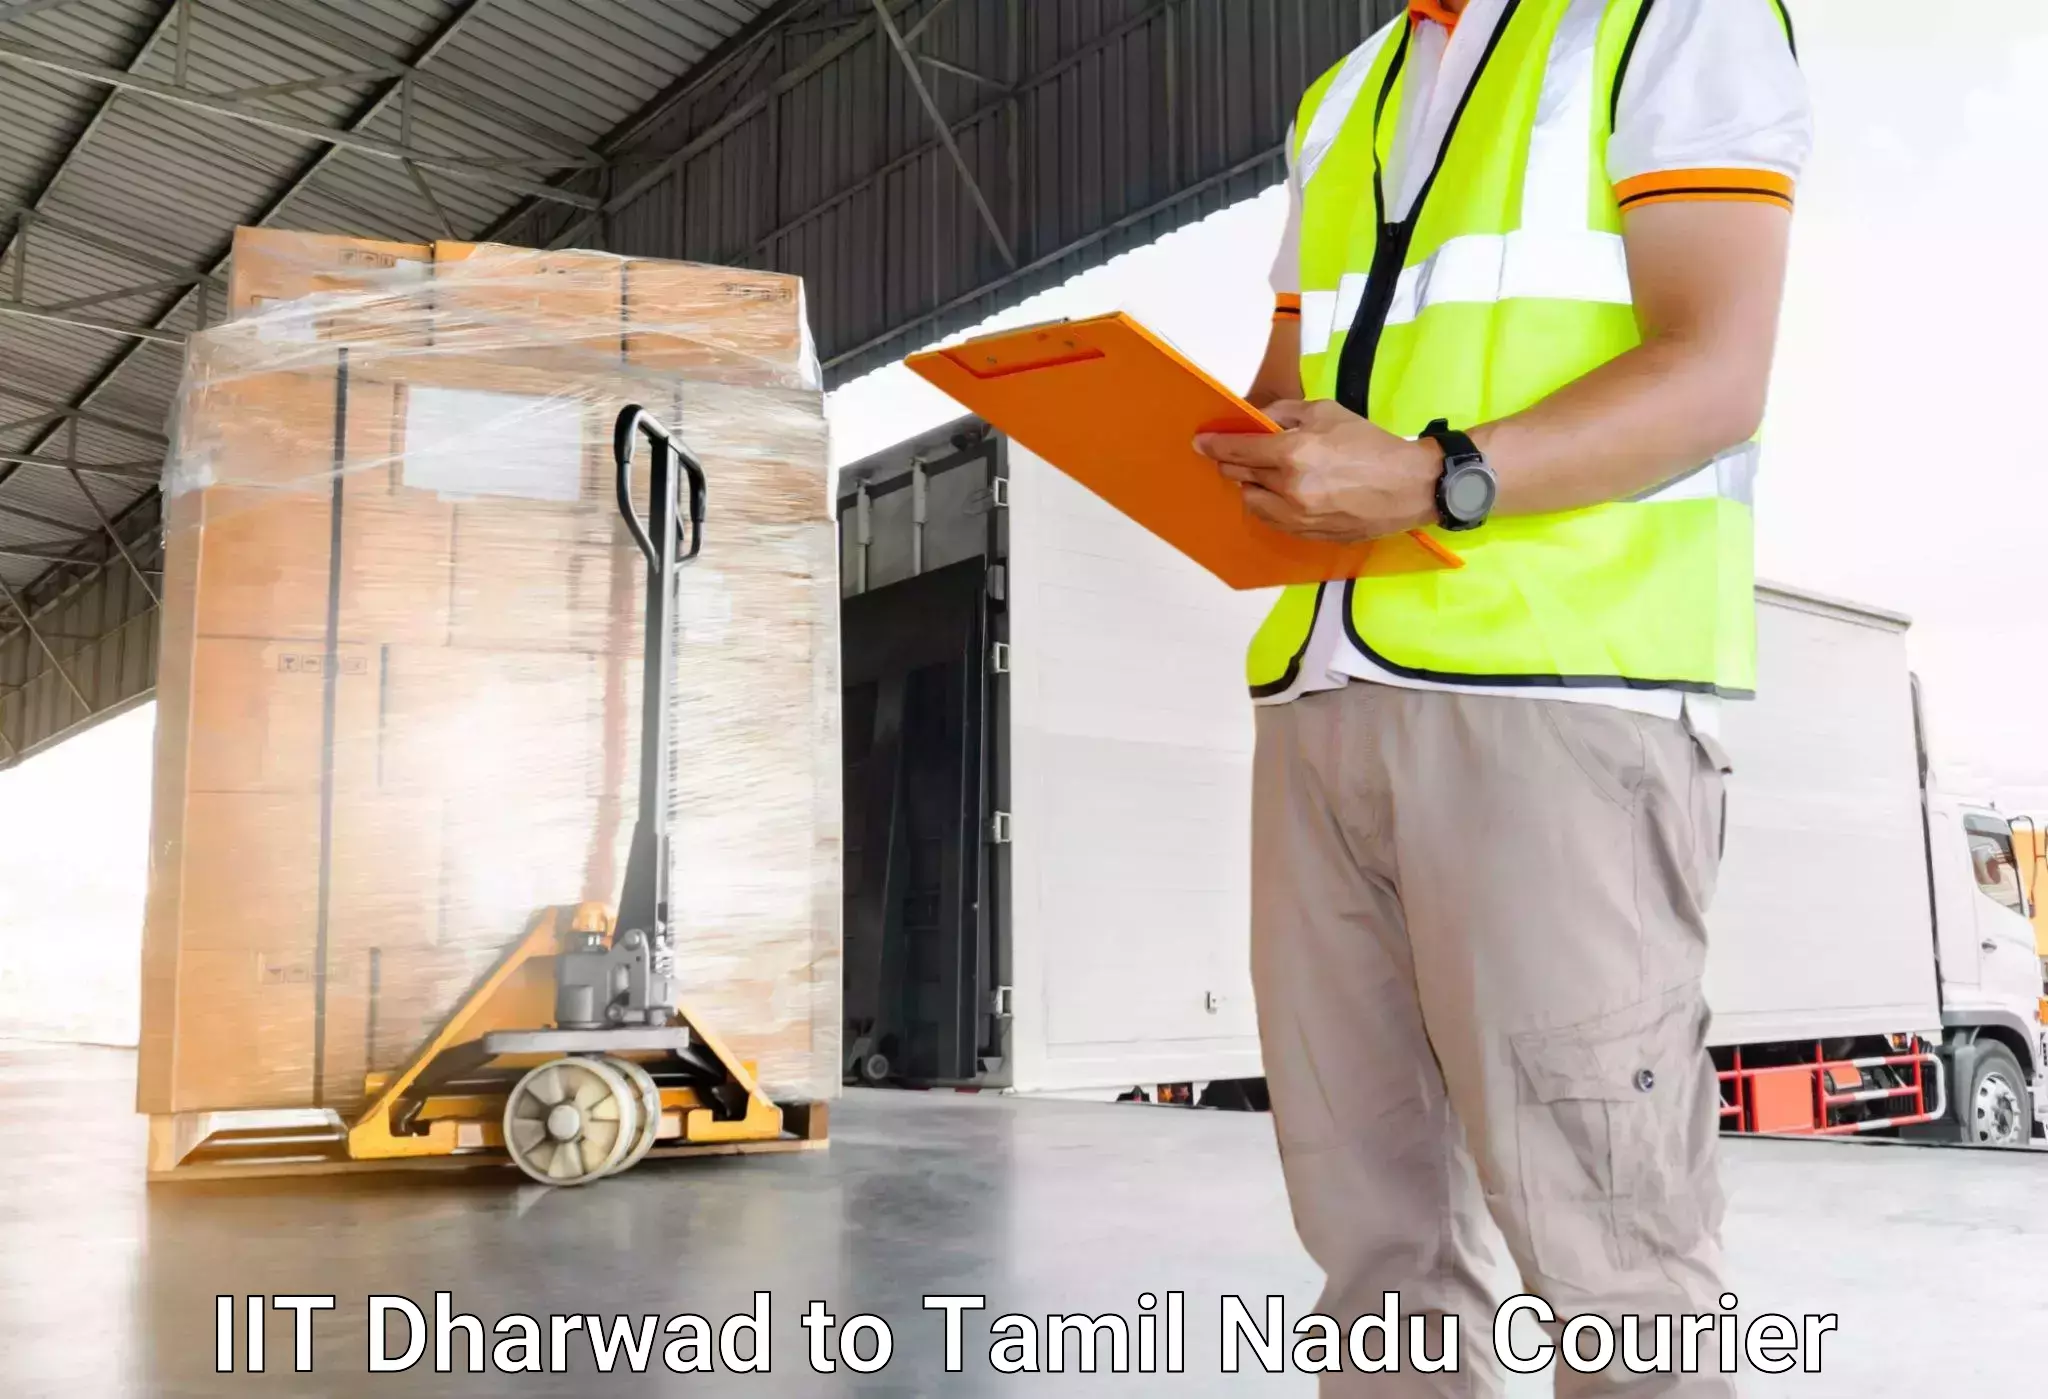 Luggage delivery app IIT Dharwad to Tamil Nadu